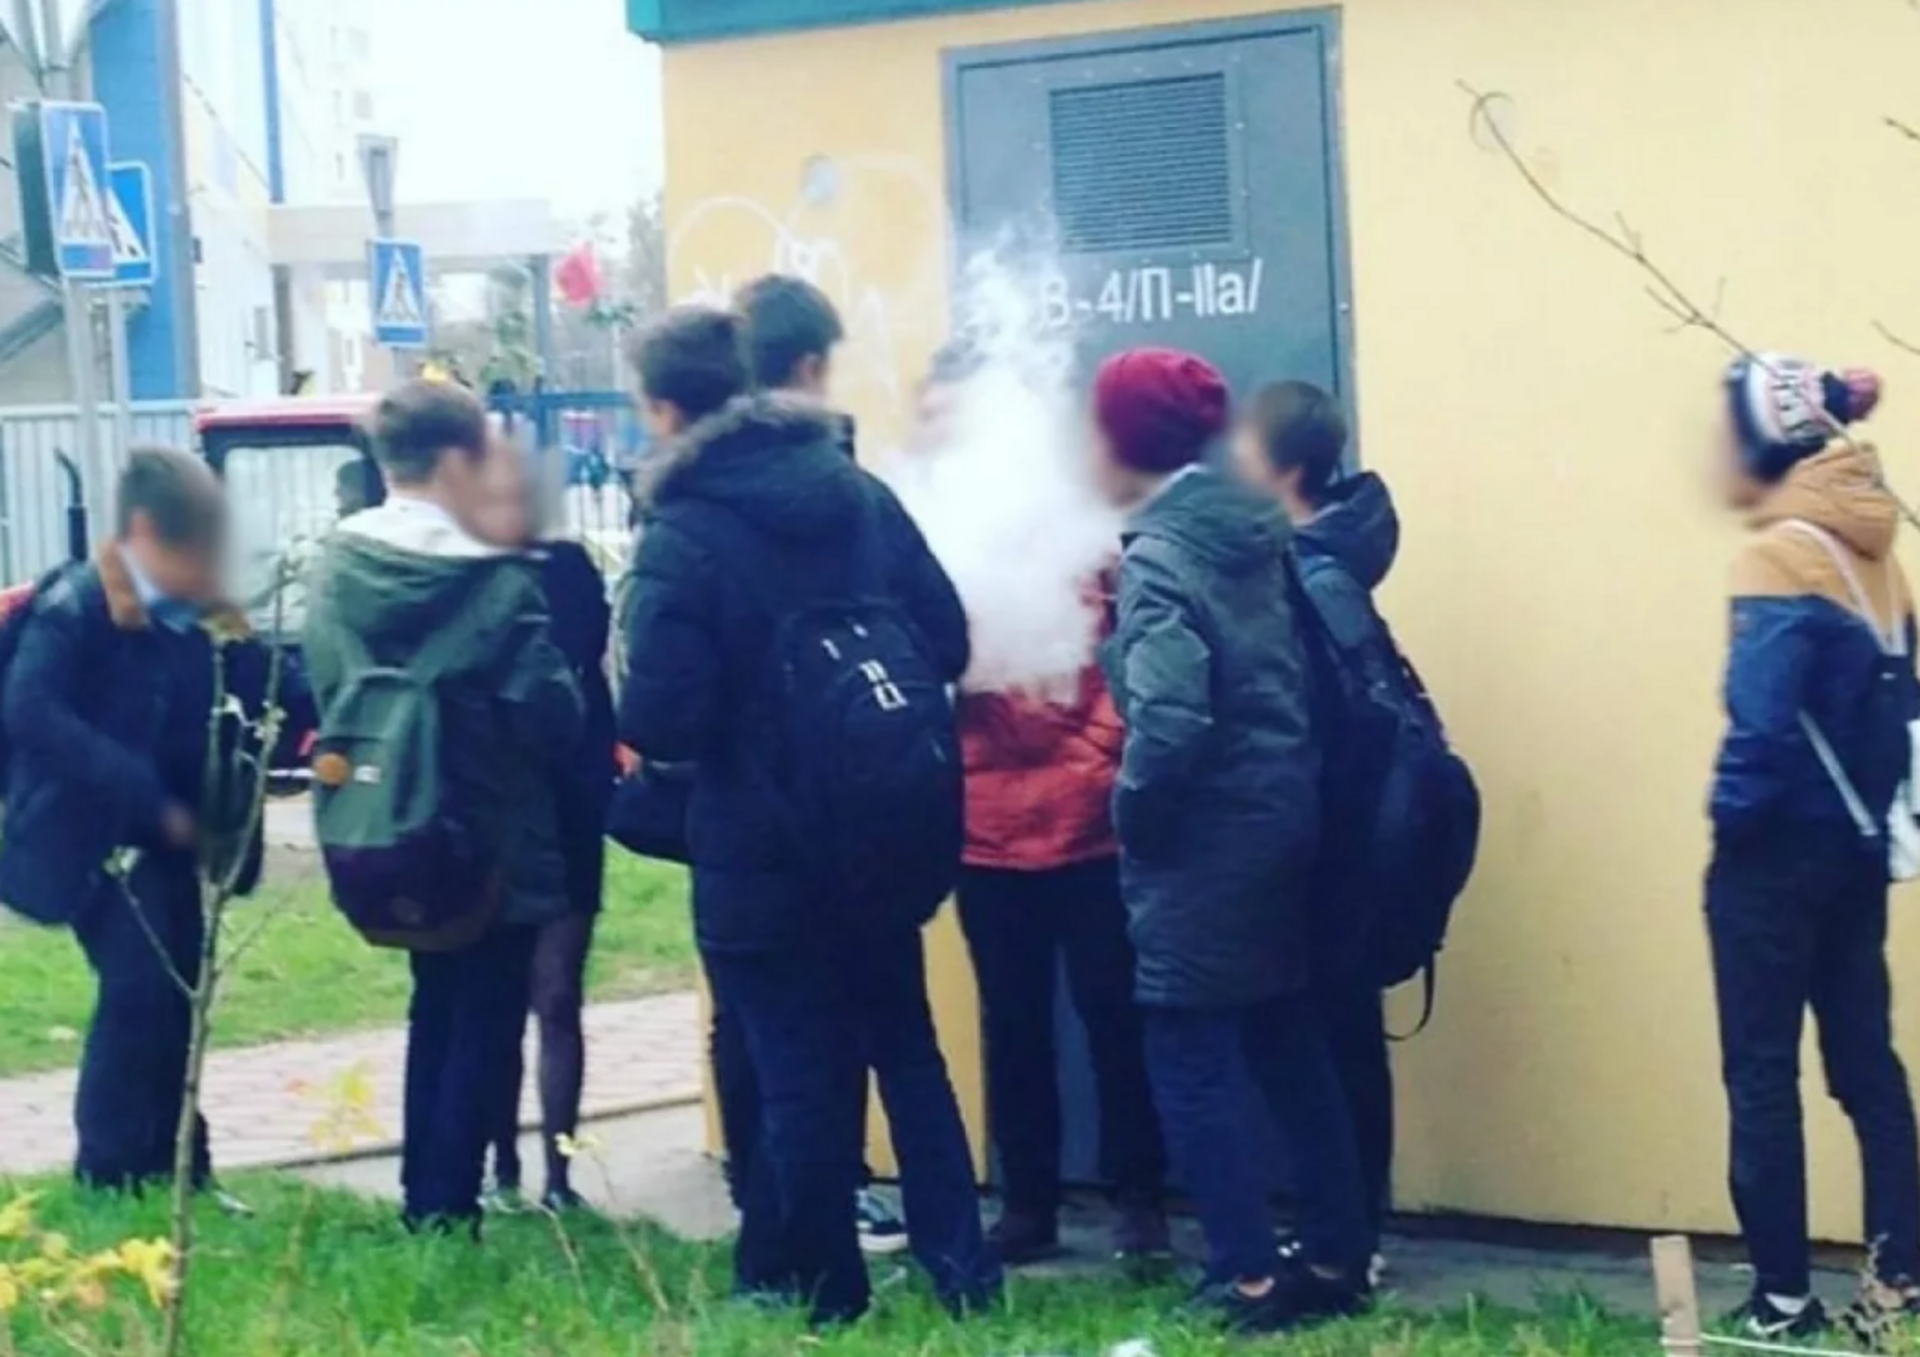 Нашел электронную сигарету на улице. Школьники курят. Курят за школой. Дети курят за школой. Школьник курит за школой.